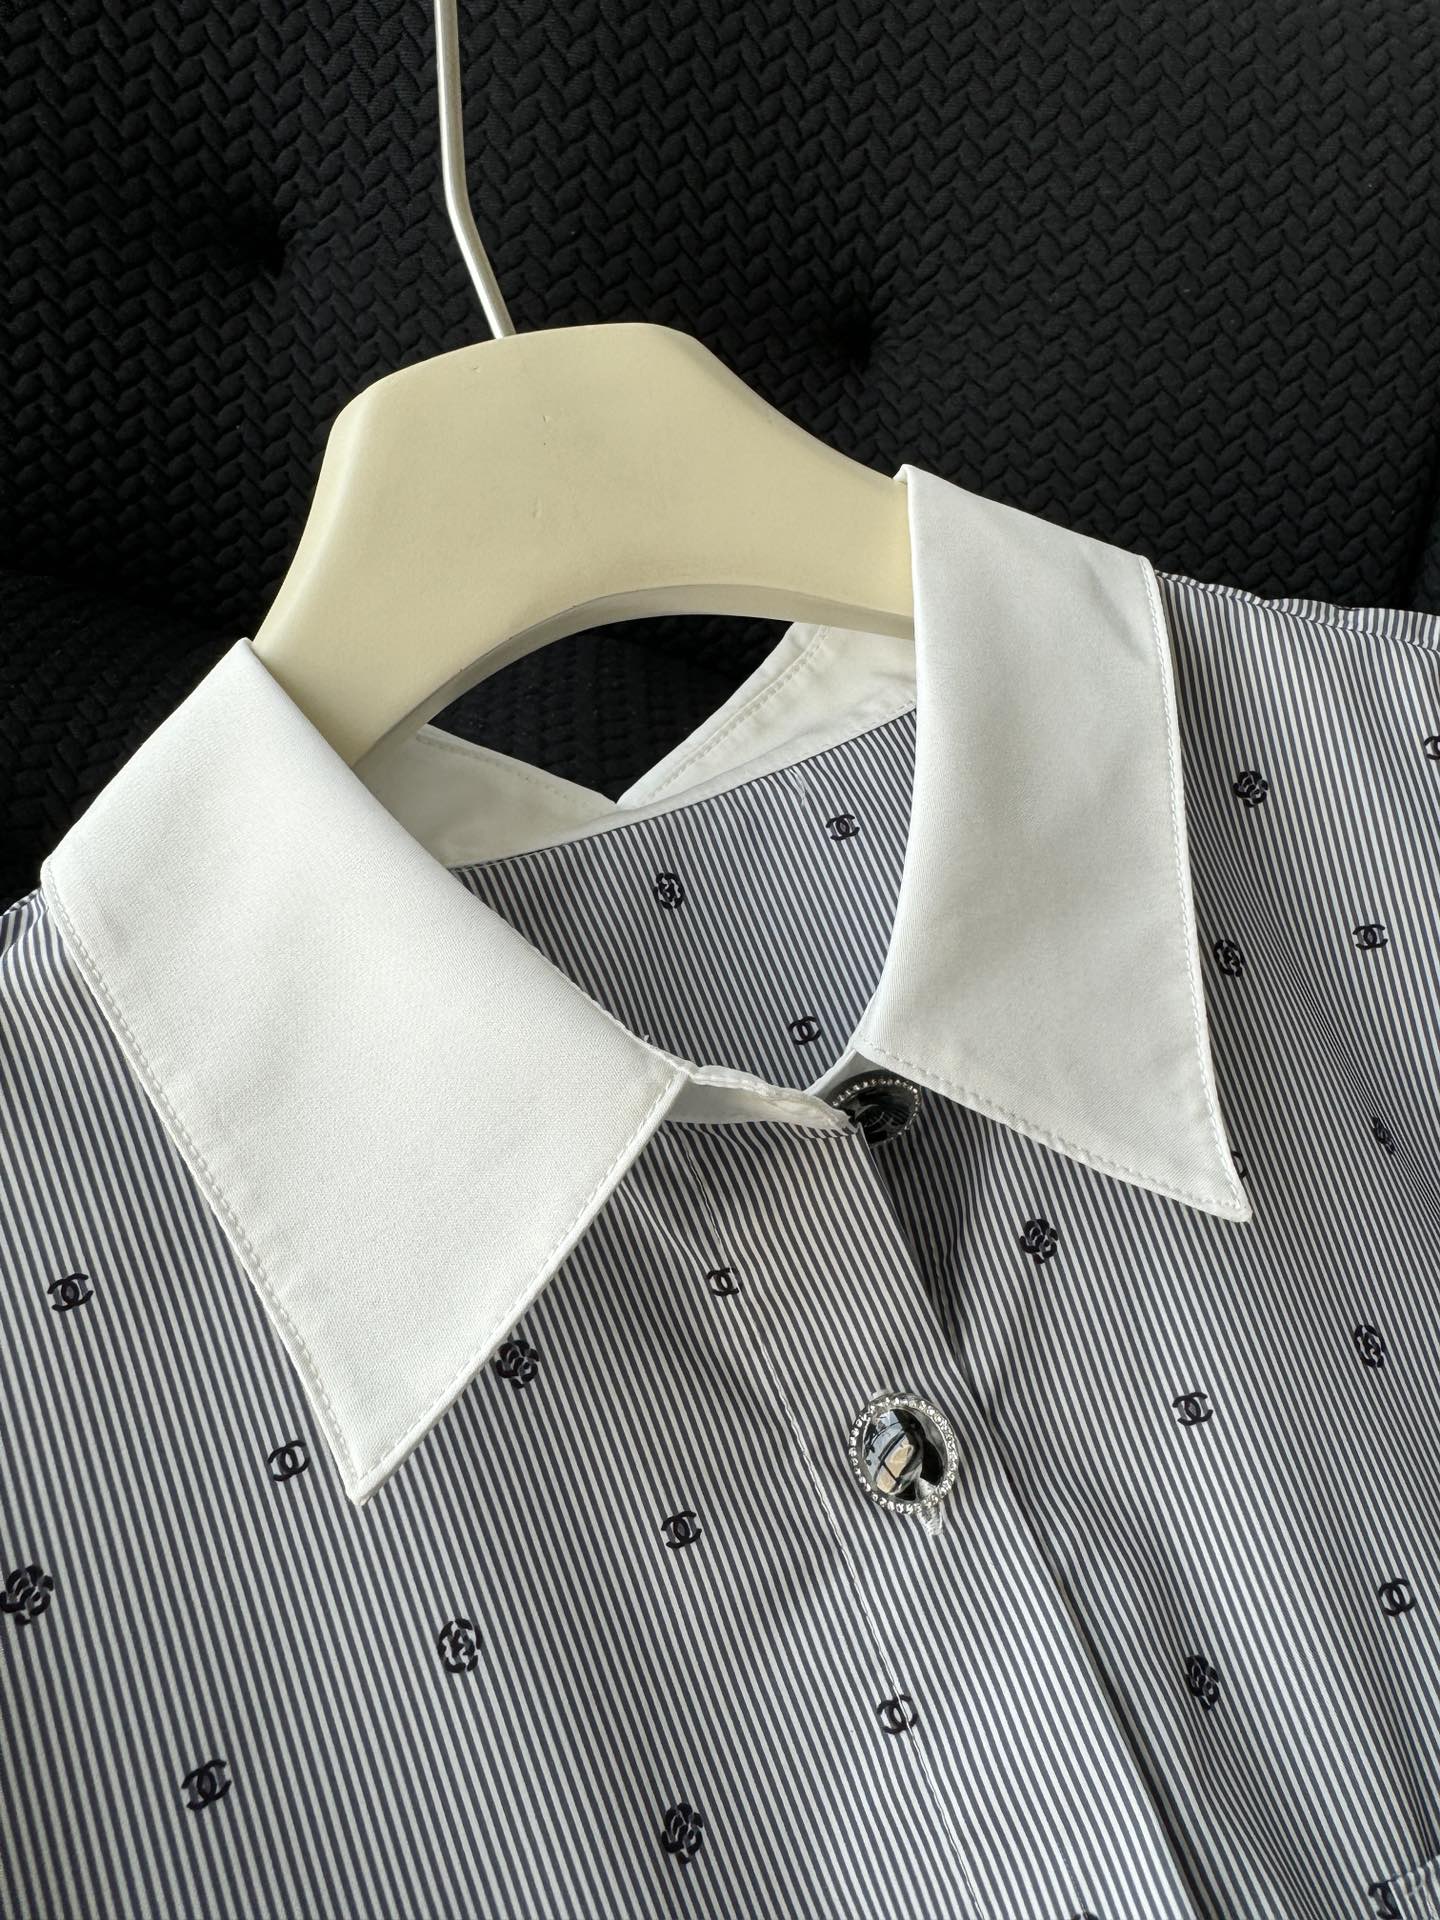 领部拼接白色衬衫领设计 门禁和袖口黑色双C钻扣，超级吸引人眼球，简单一点也不浮夸，点缀的恰到好处！